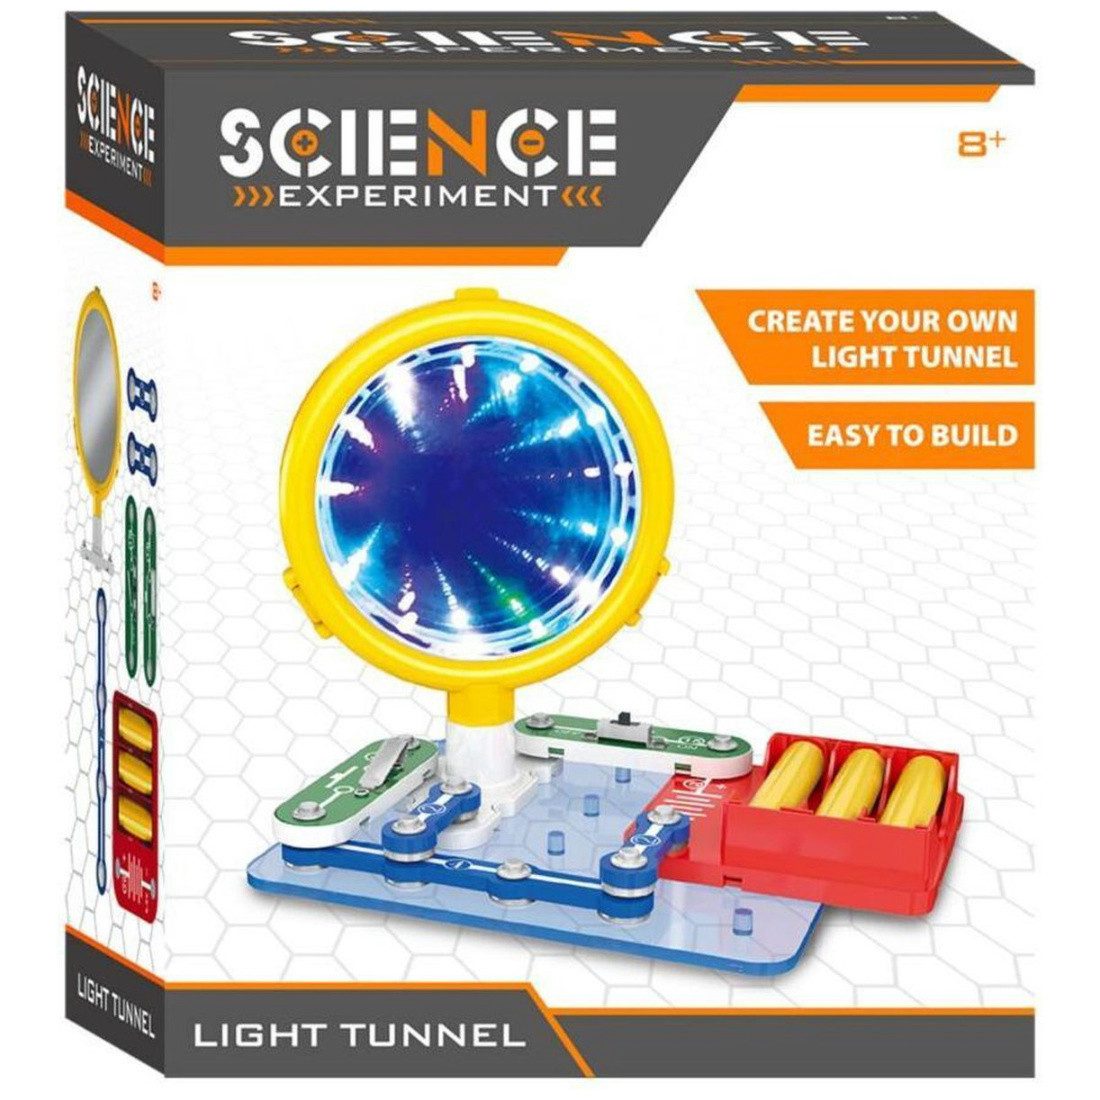 Otto Simon Lernspielzeug Wissenschaft baue deinen Eigenen Lichttunnel